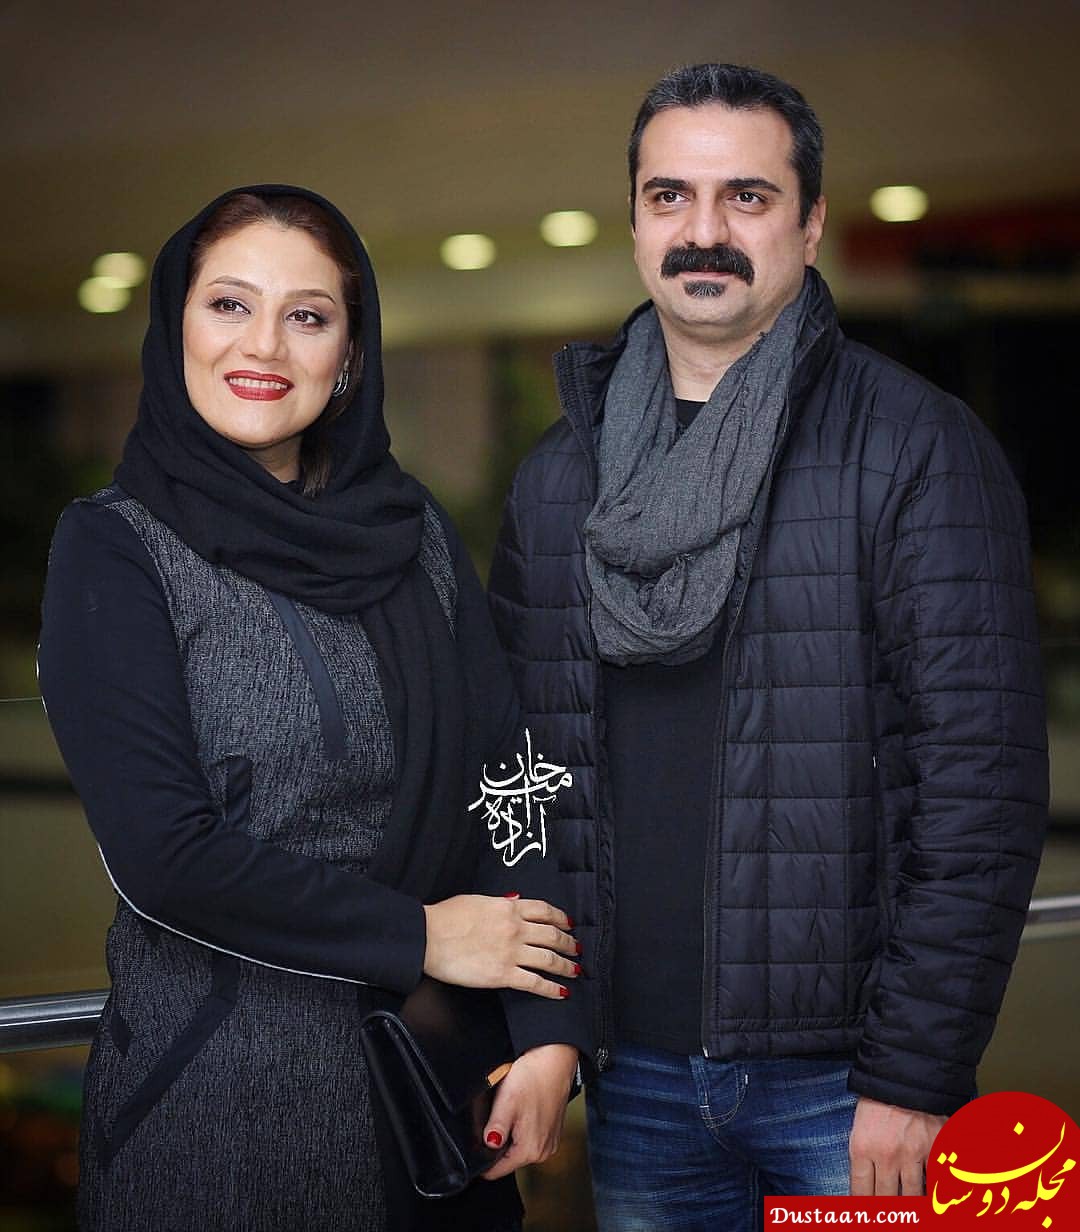 www.dustaan.com-بیوگرافی و عکس های دیدنی شبنم مقدمی و همسرش علیرضا آرا